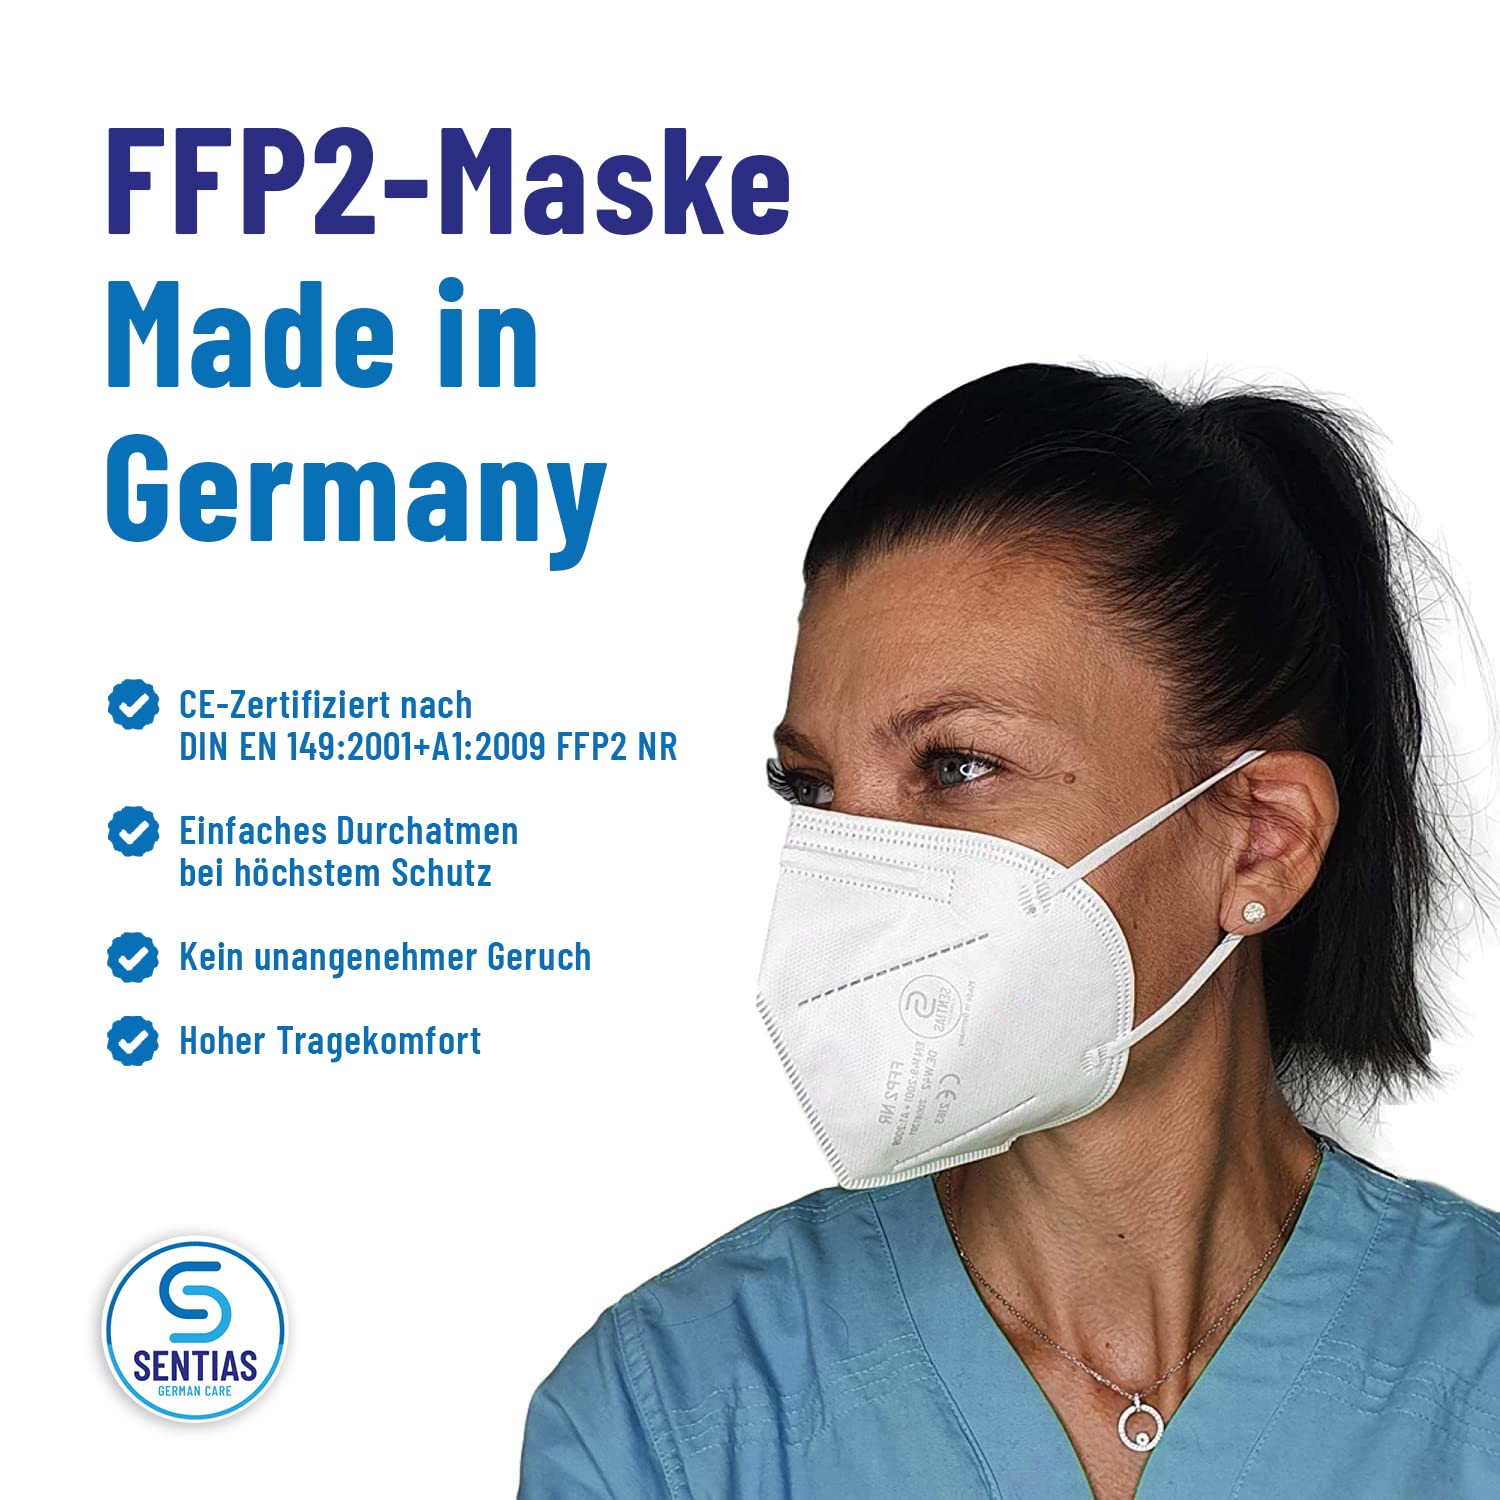 德国疫情趋紧，大家注意做好防护！FFP2口罩为大家提供最安全的呼吸空间！